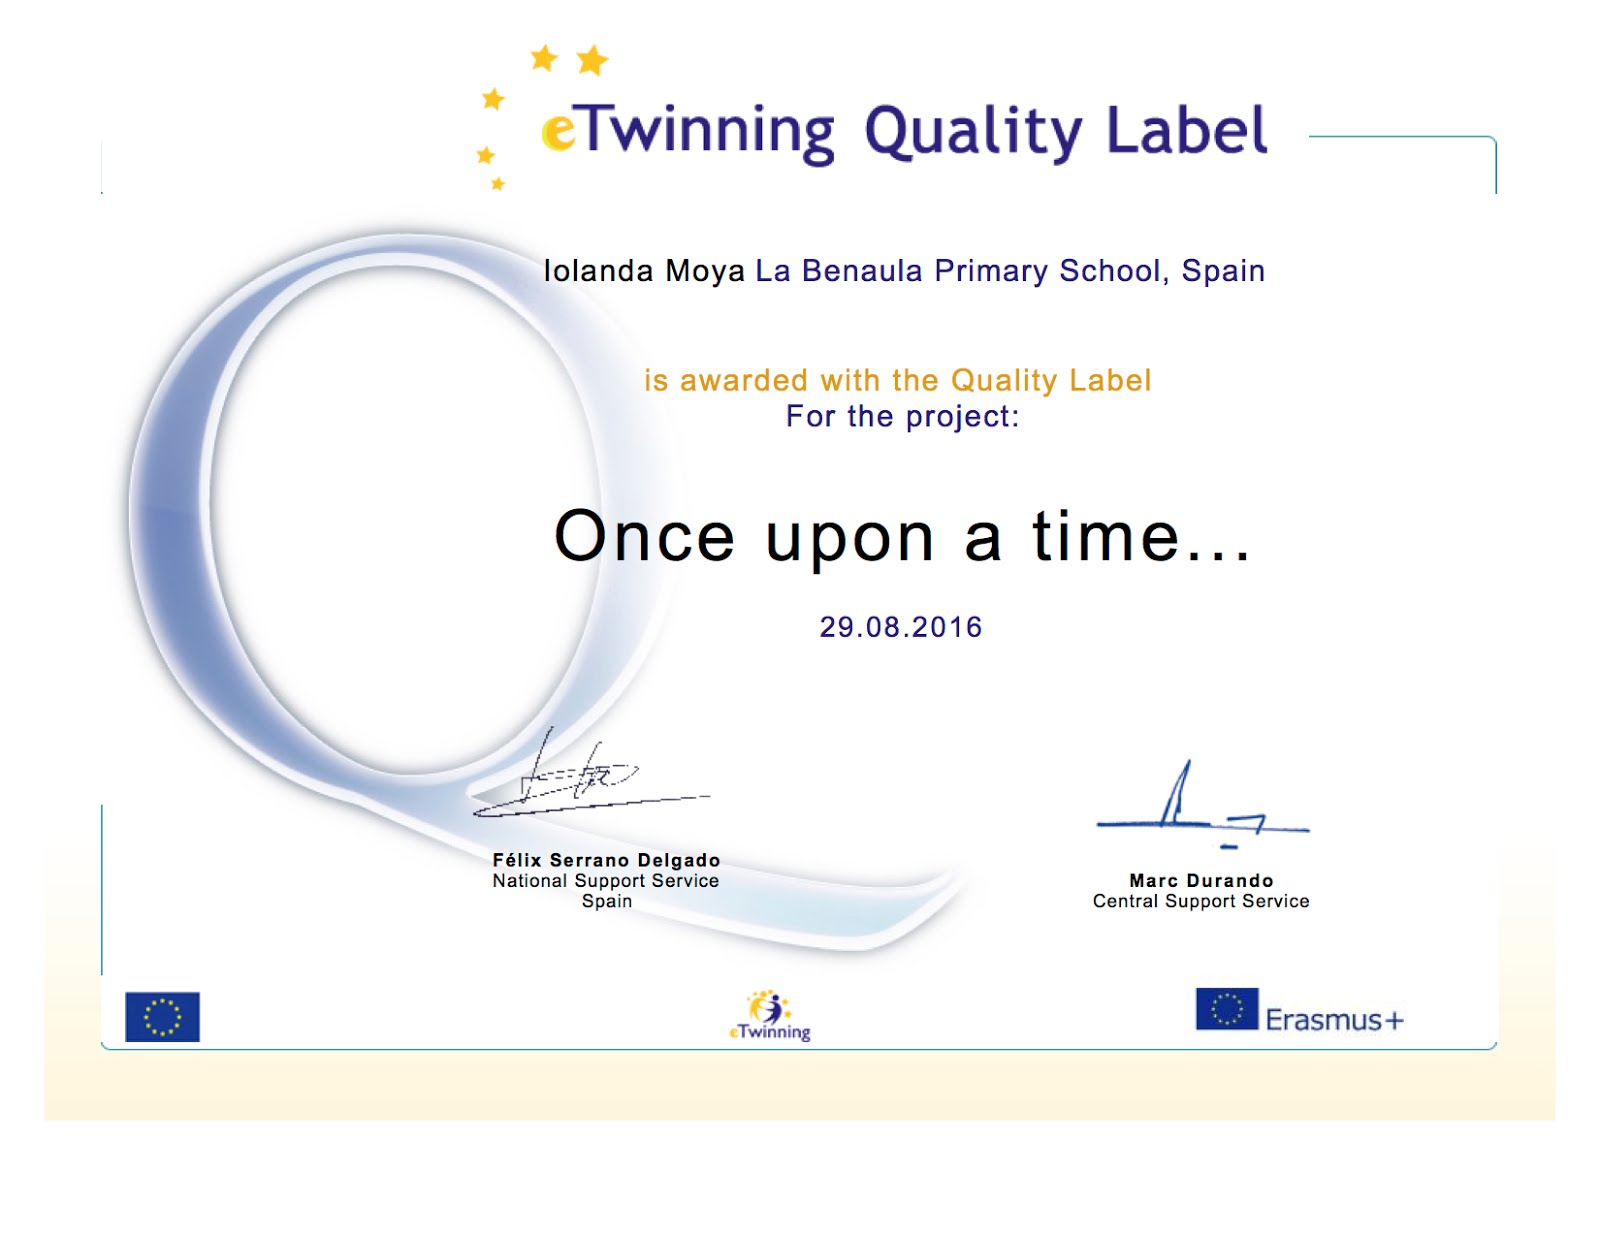 Segon Quality Label de l'escola La Benaula